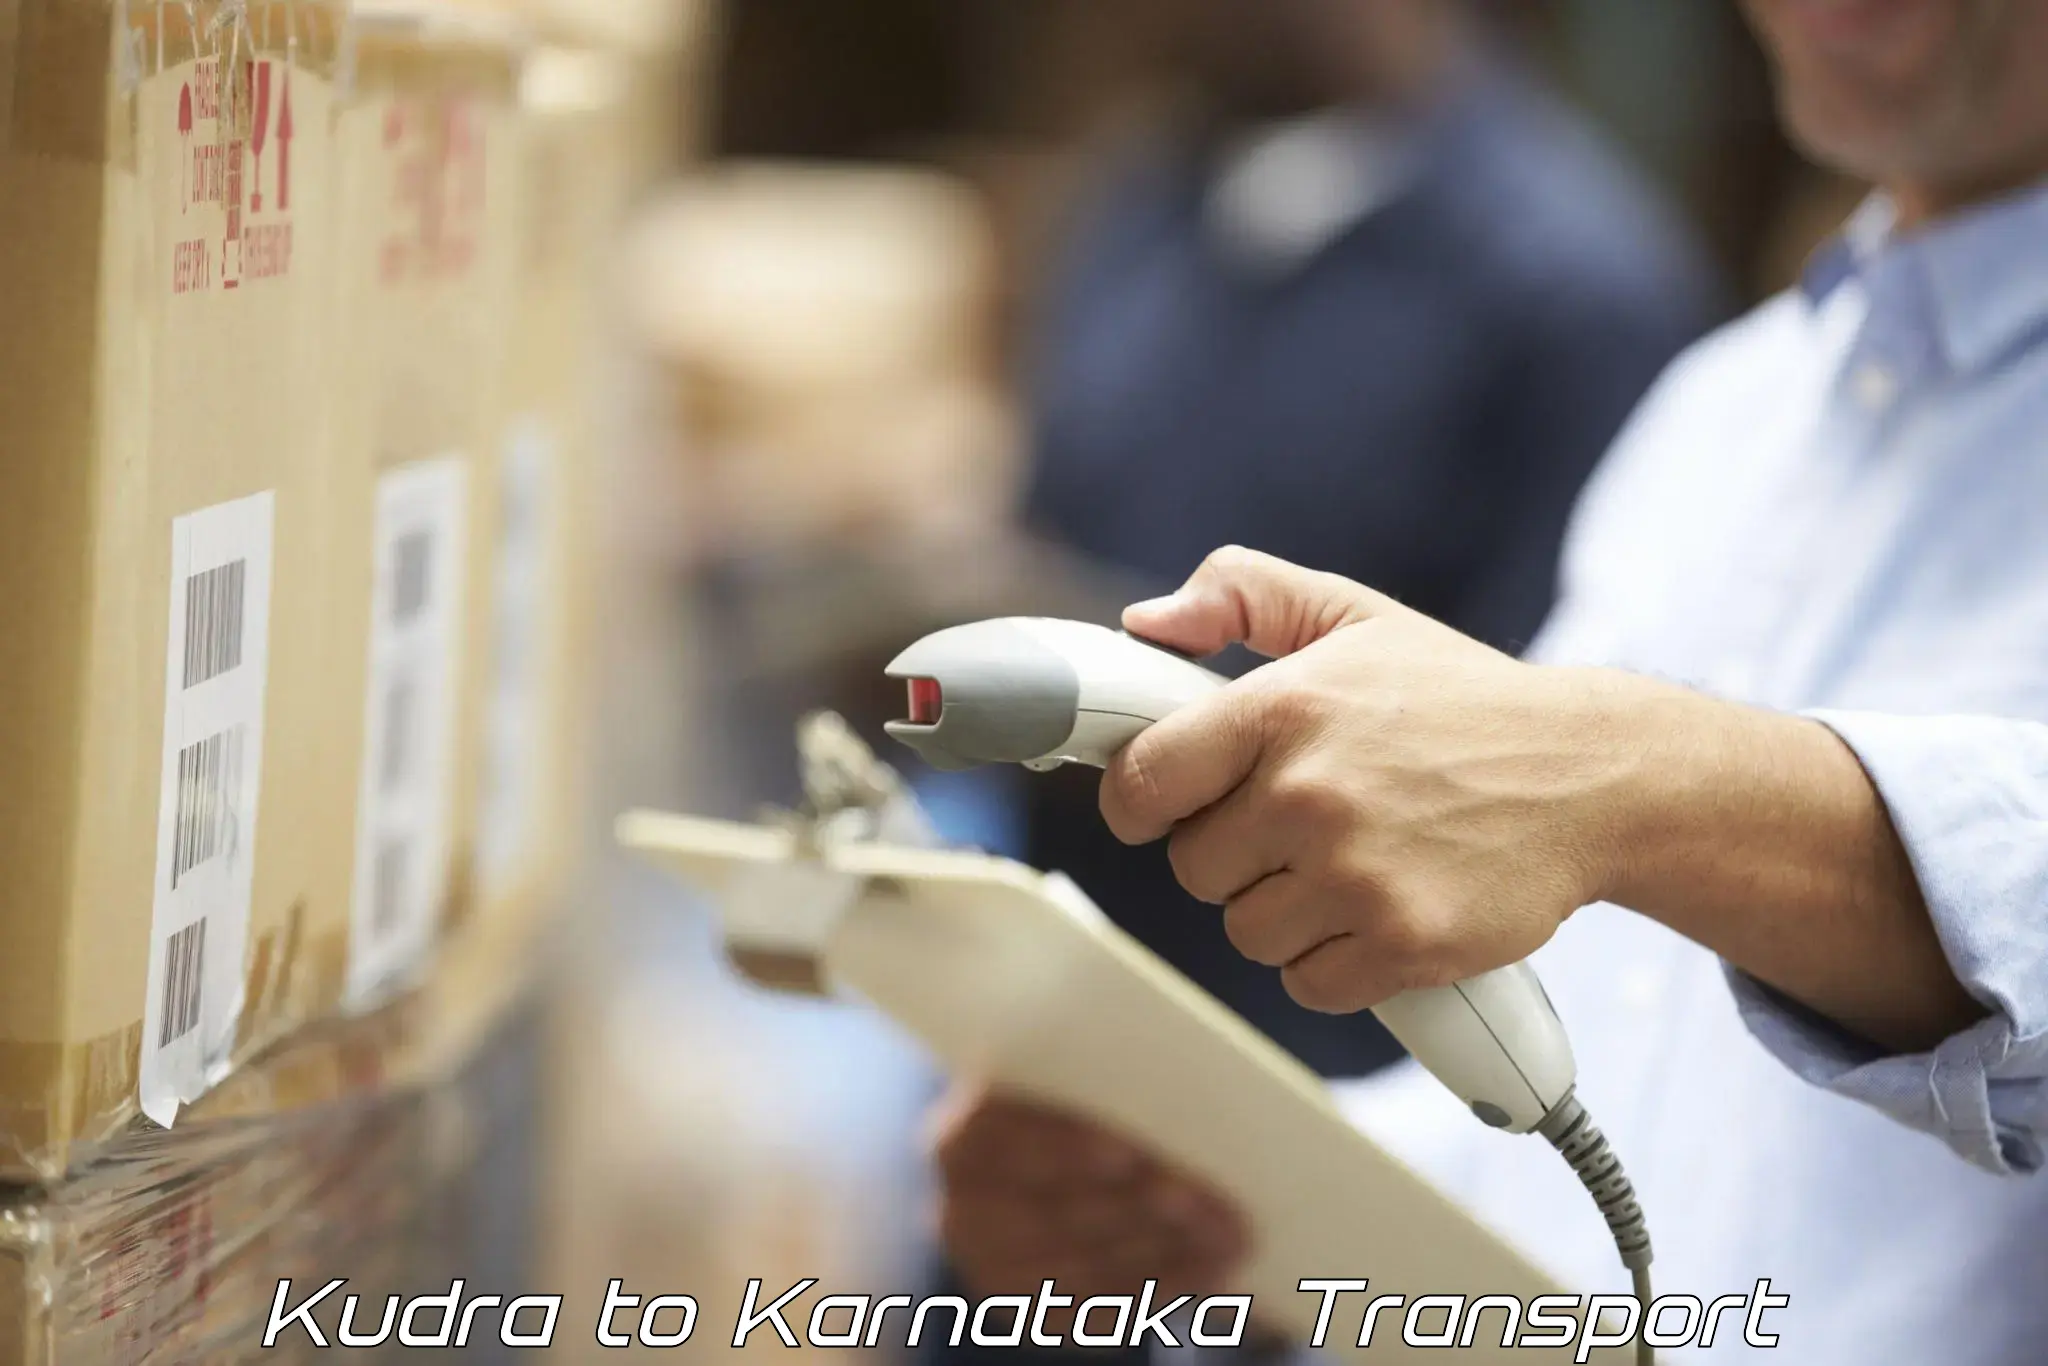 Online transport booking Kudra to Hangal